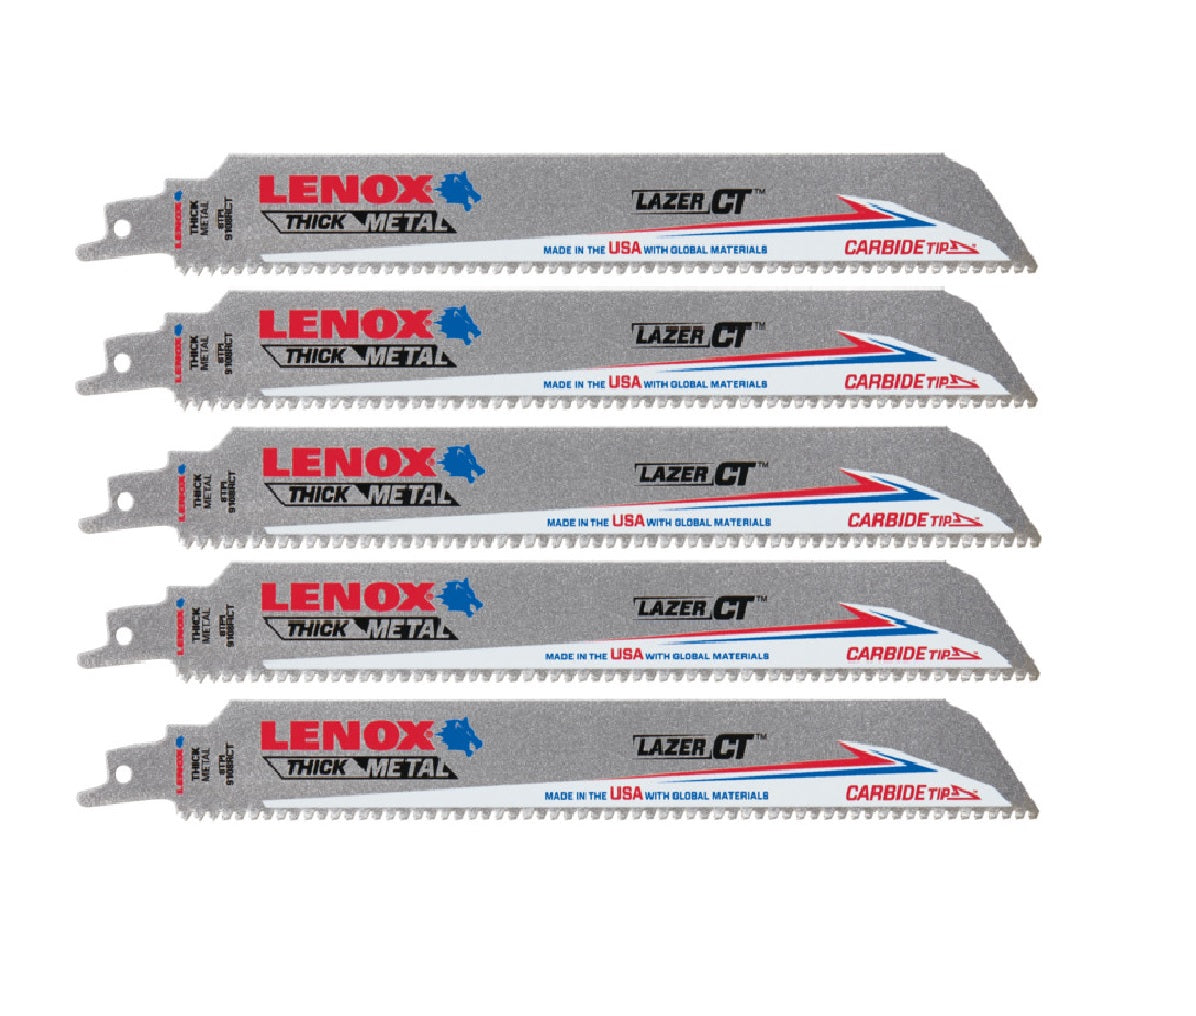 Lenox 2014225 8 TPI Carbide Tip Reciprocating Saw Blade